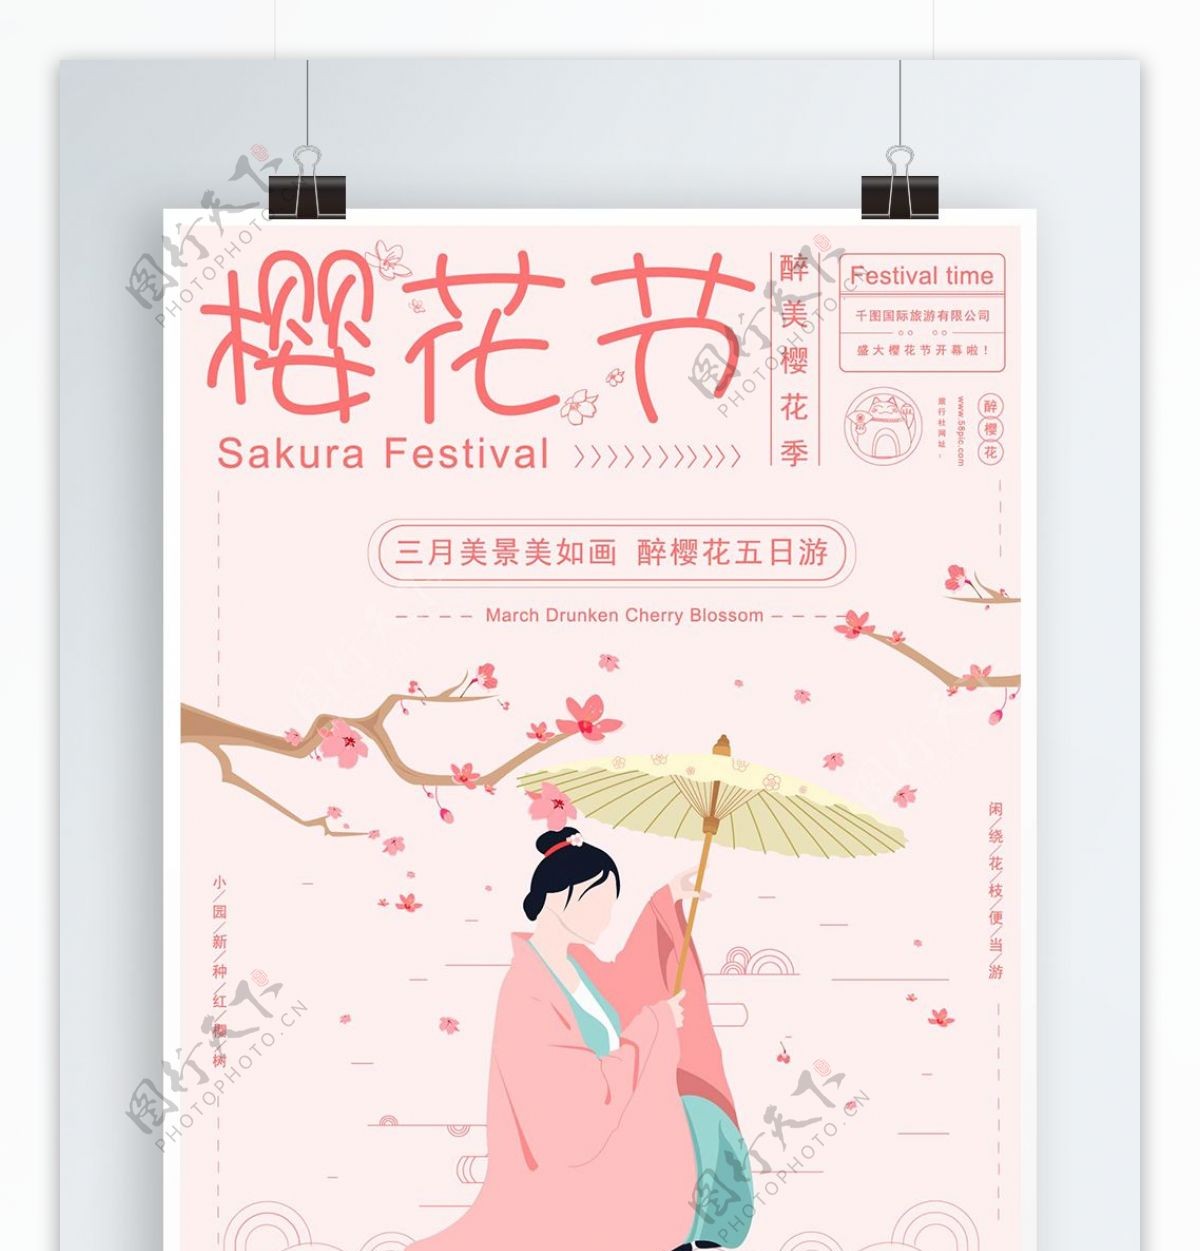 原创手绘小清新樱花节旅游宣传海报